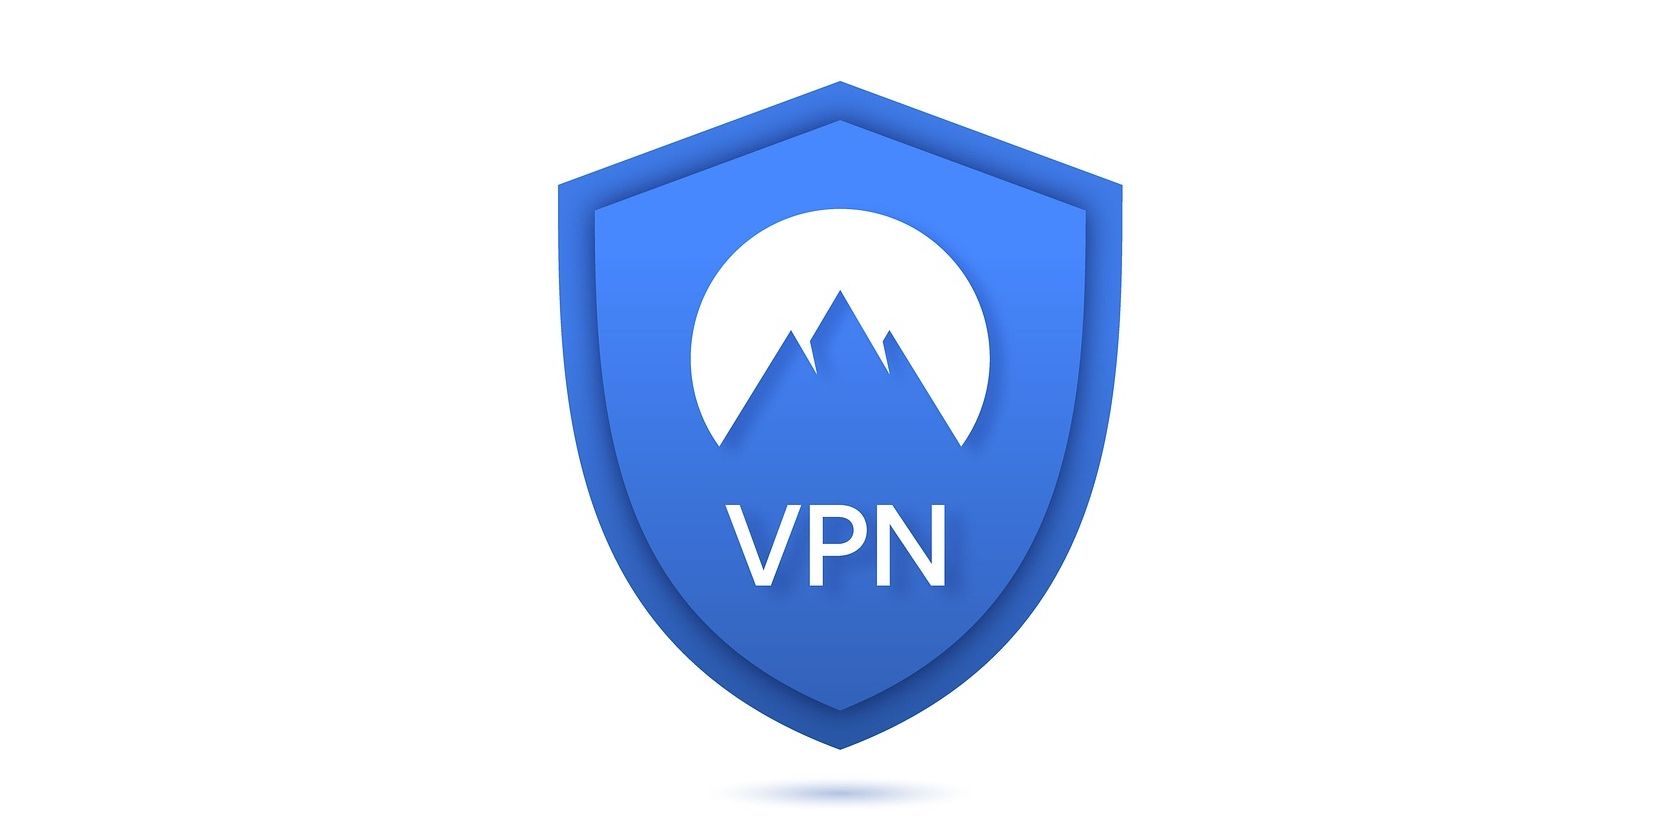 Hjelper VPN mot ransomware?